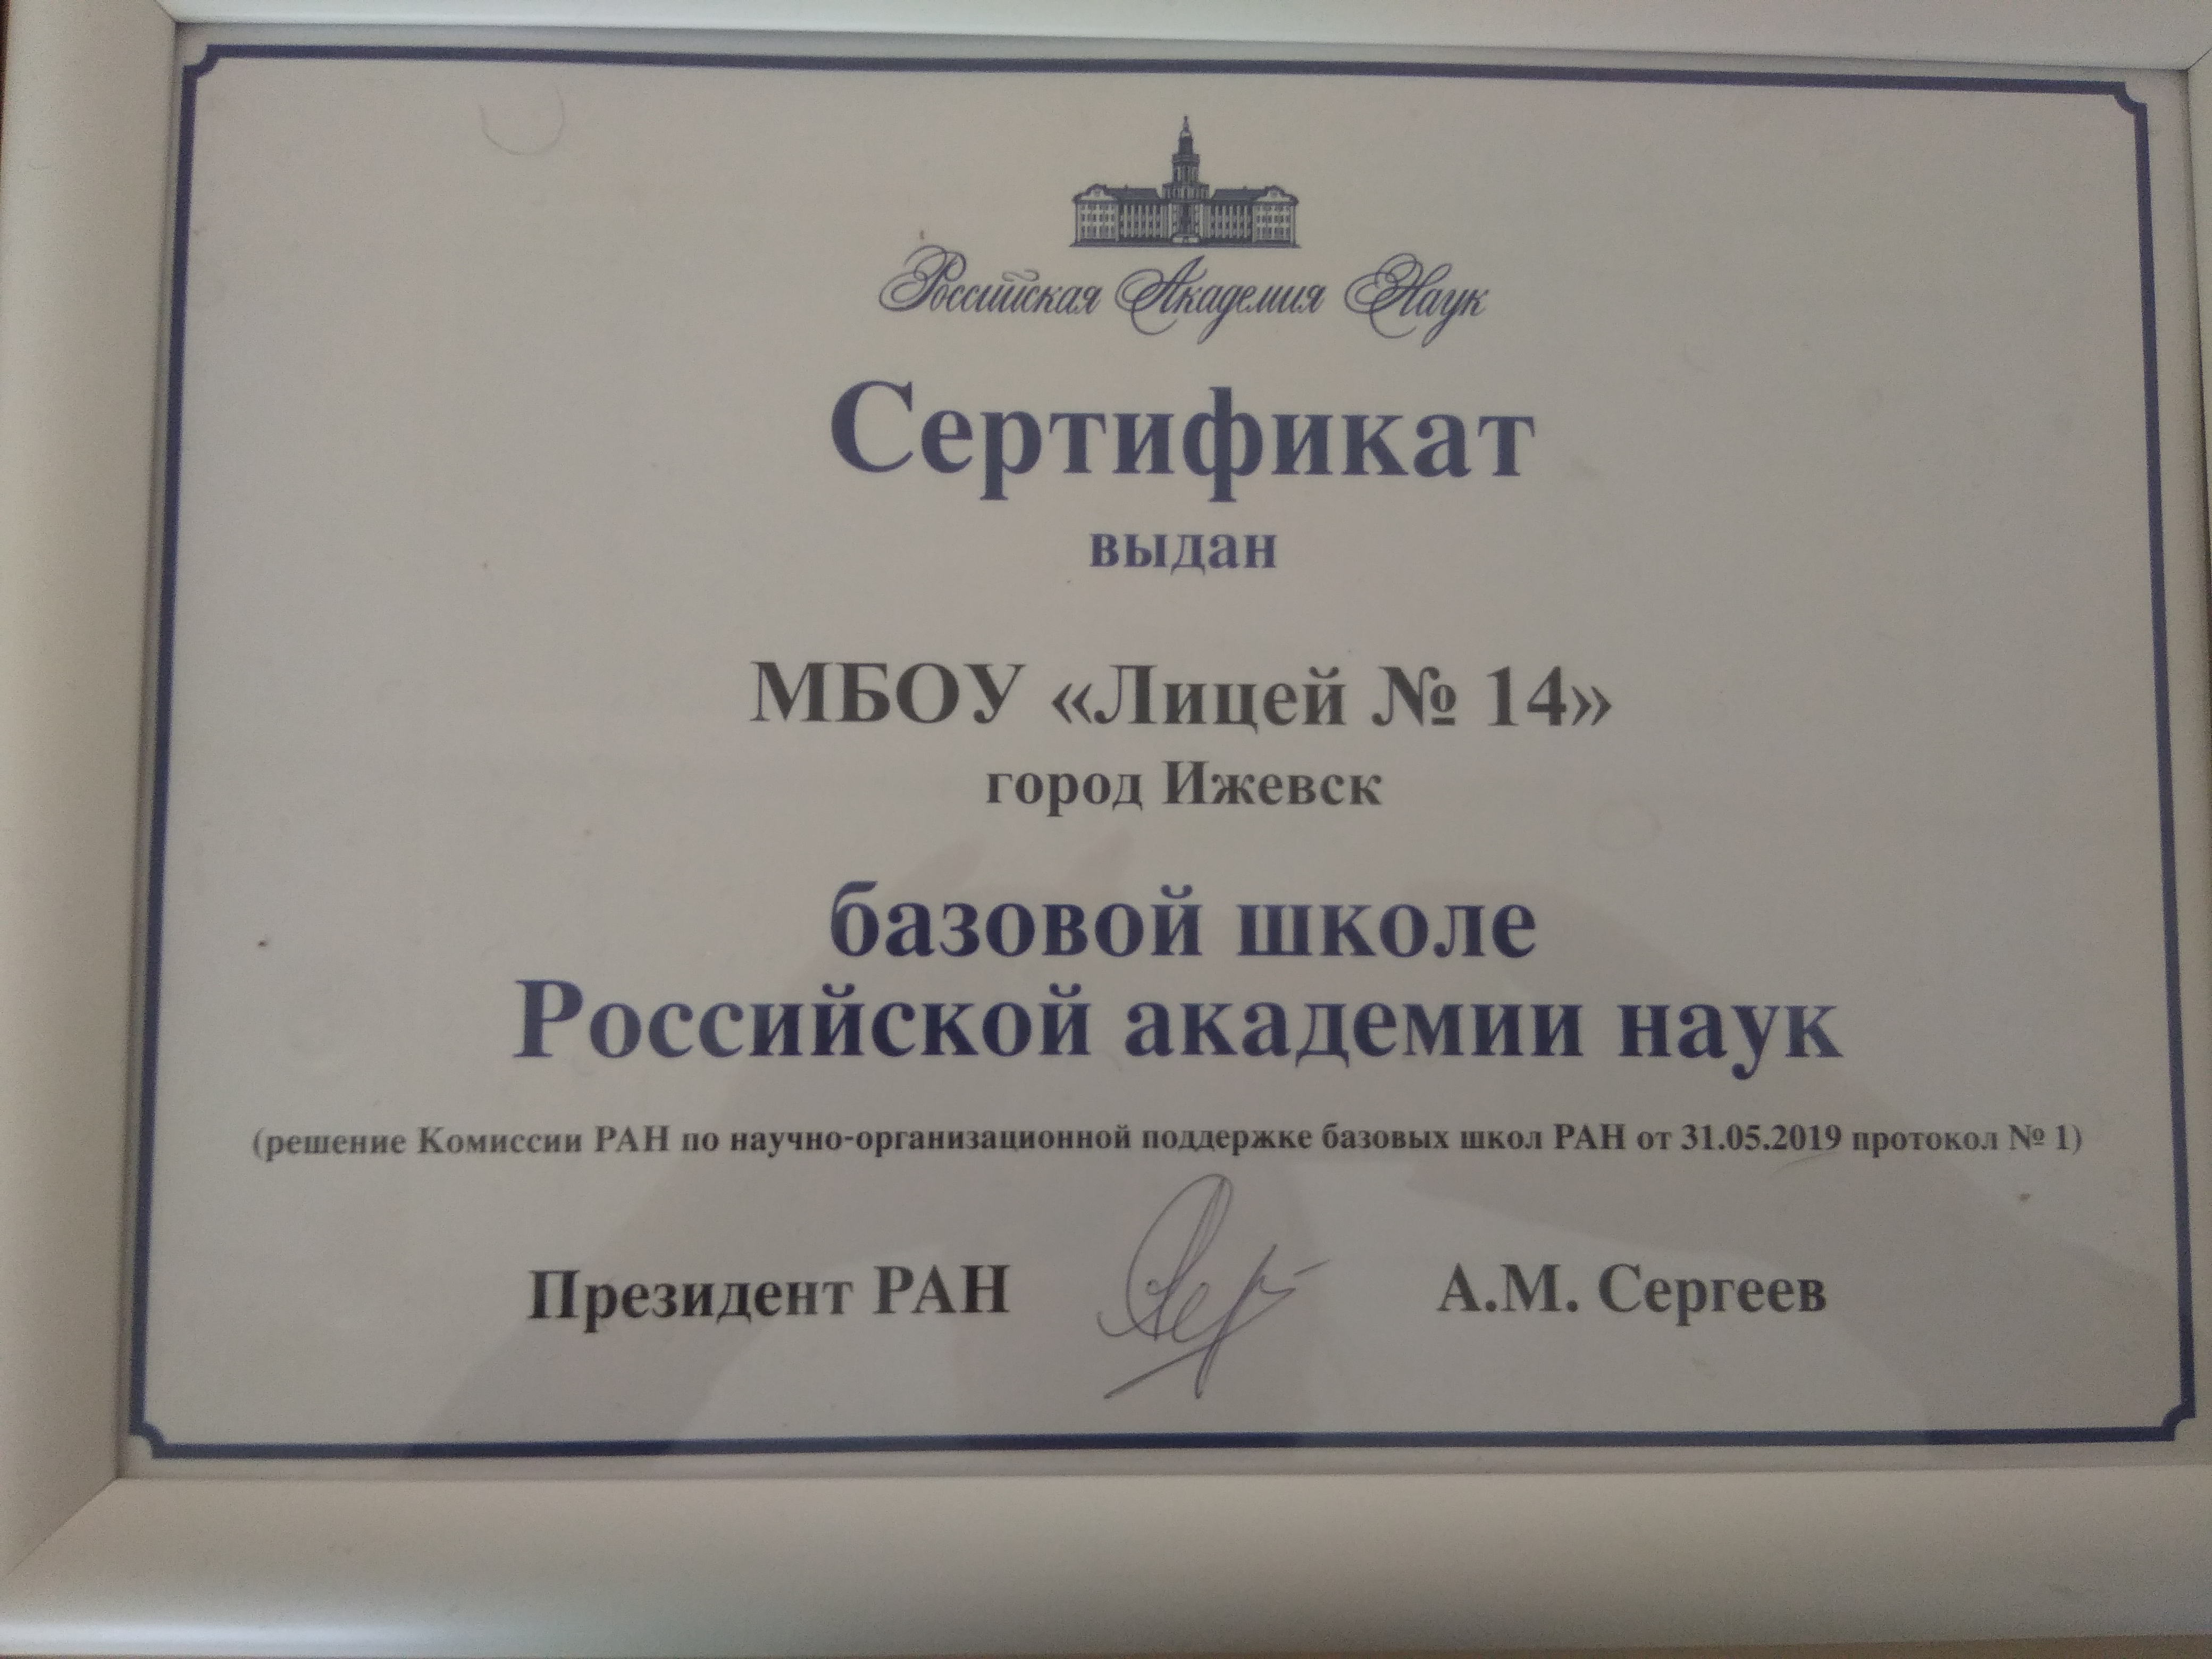 Сертификат базовой школе Российской академии наук